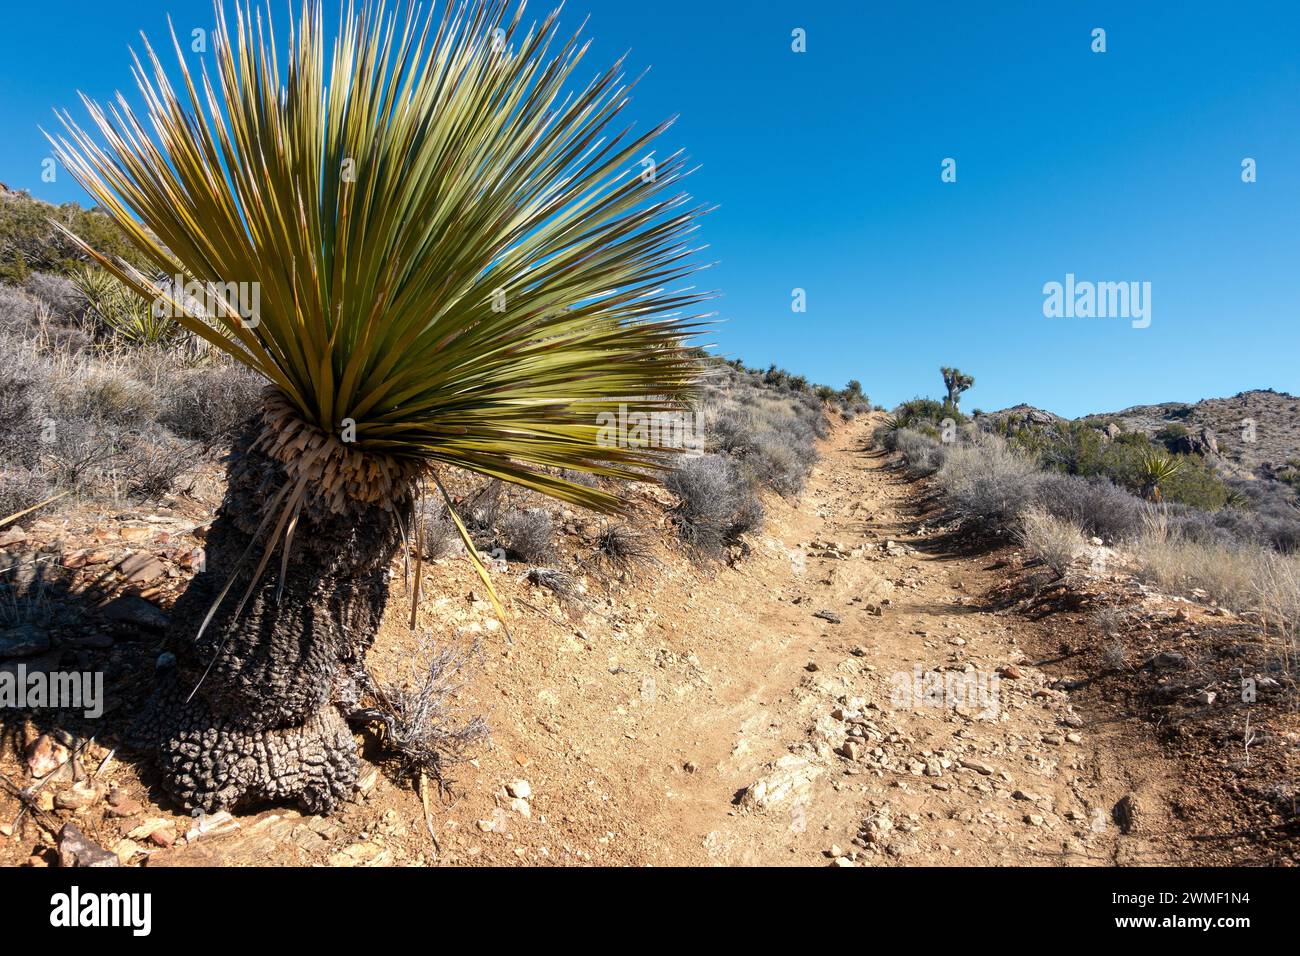 Yucca Brevifolia Cactus Palm Tree Mojave Desert Lost Horse Mine Hiking Trail. Parco nazionale di Joshua Tree paesaggio del giorno solare California sud-ovest degli Stati Uniti Foto Stock